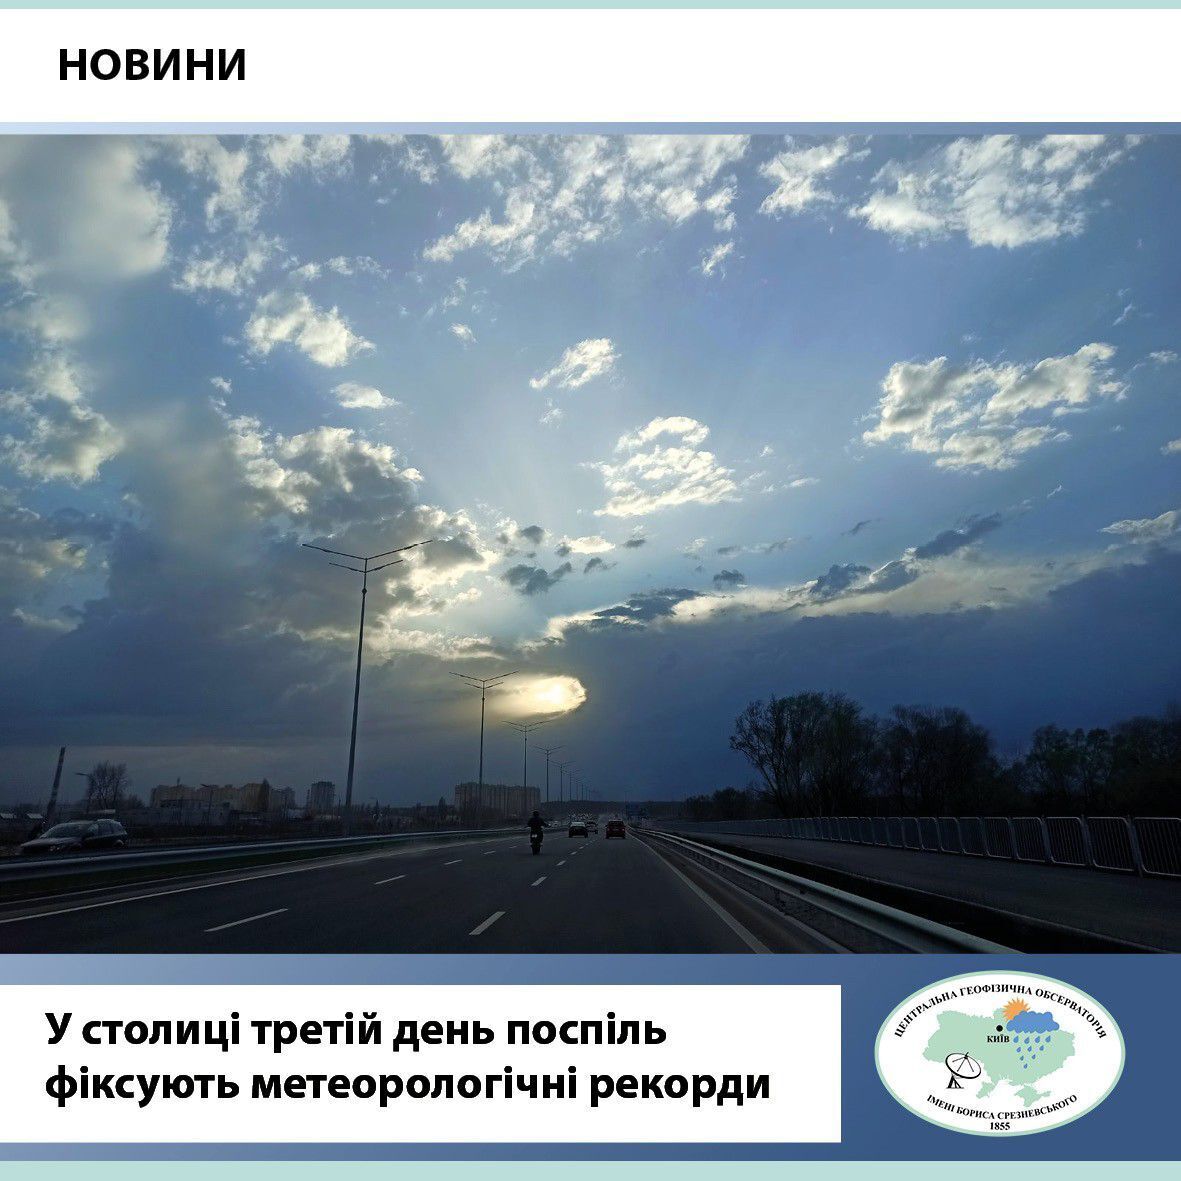 В Киеве третий день зафиксировали метеорологические рекорды: известны подробности